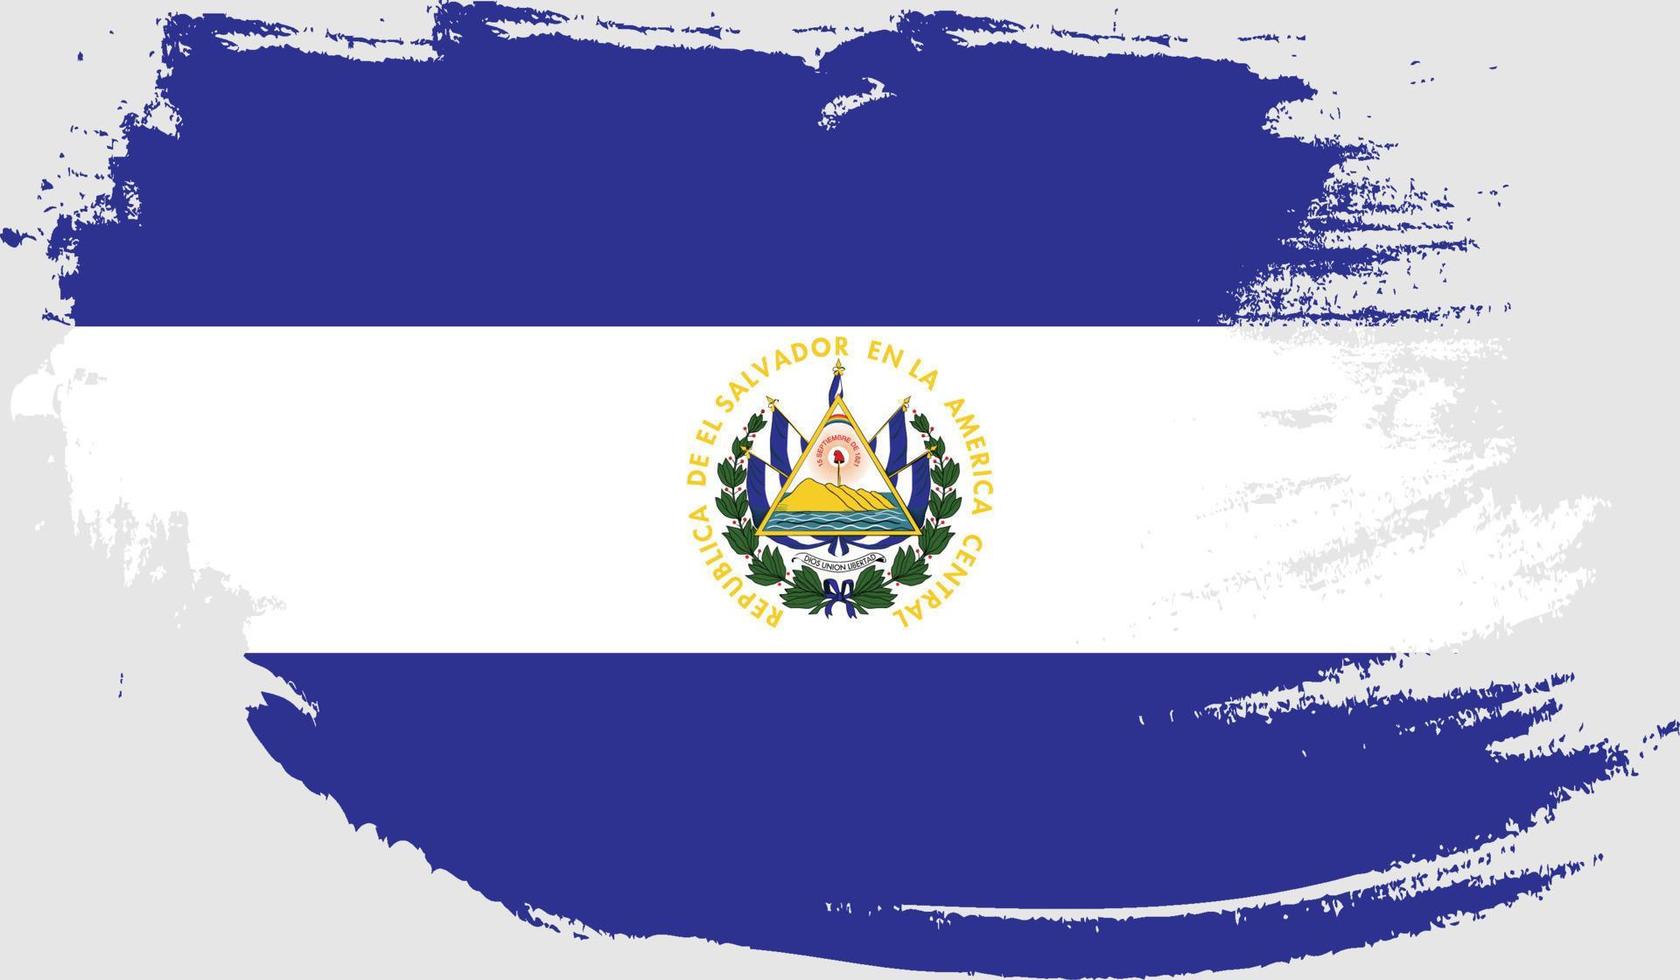 El Salvador flag with grunge texture vector